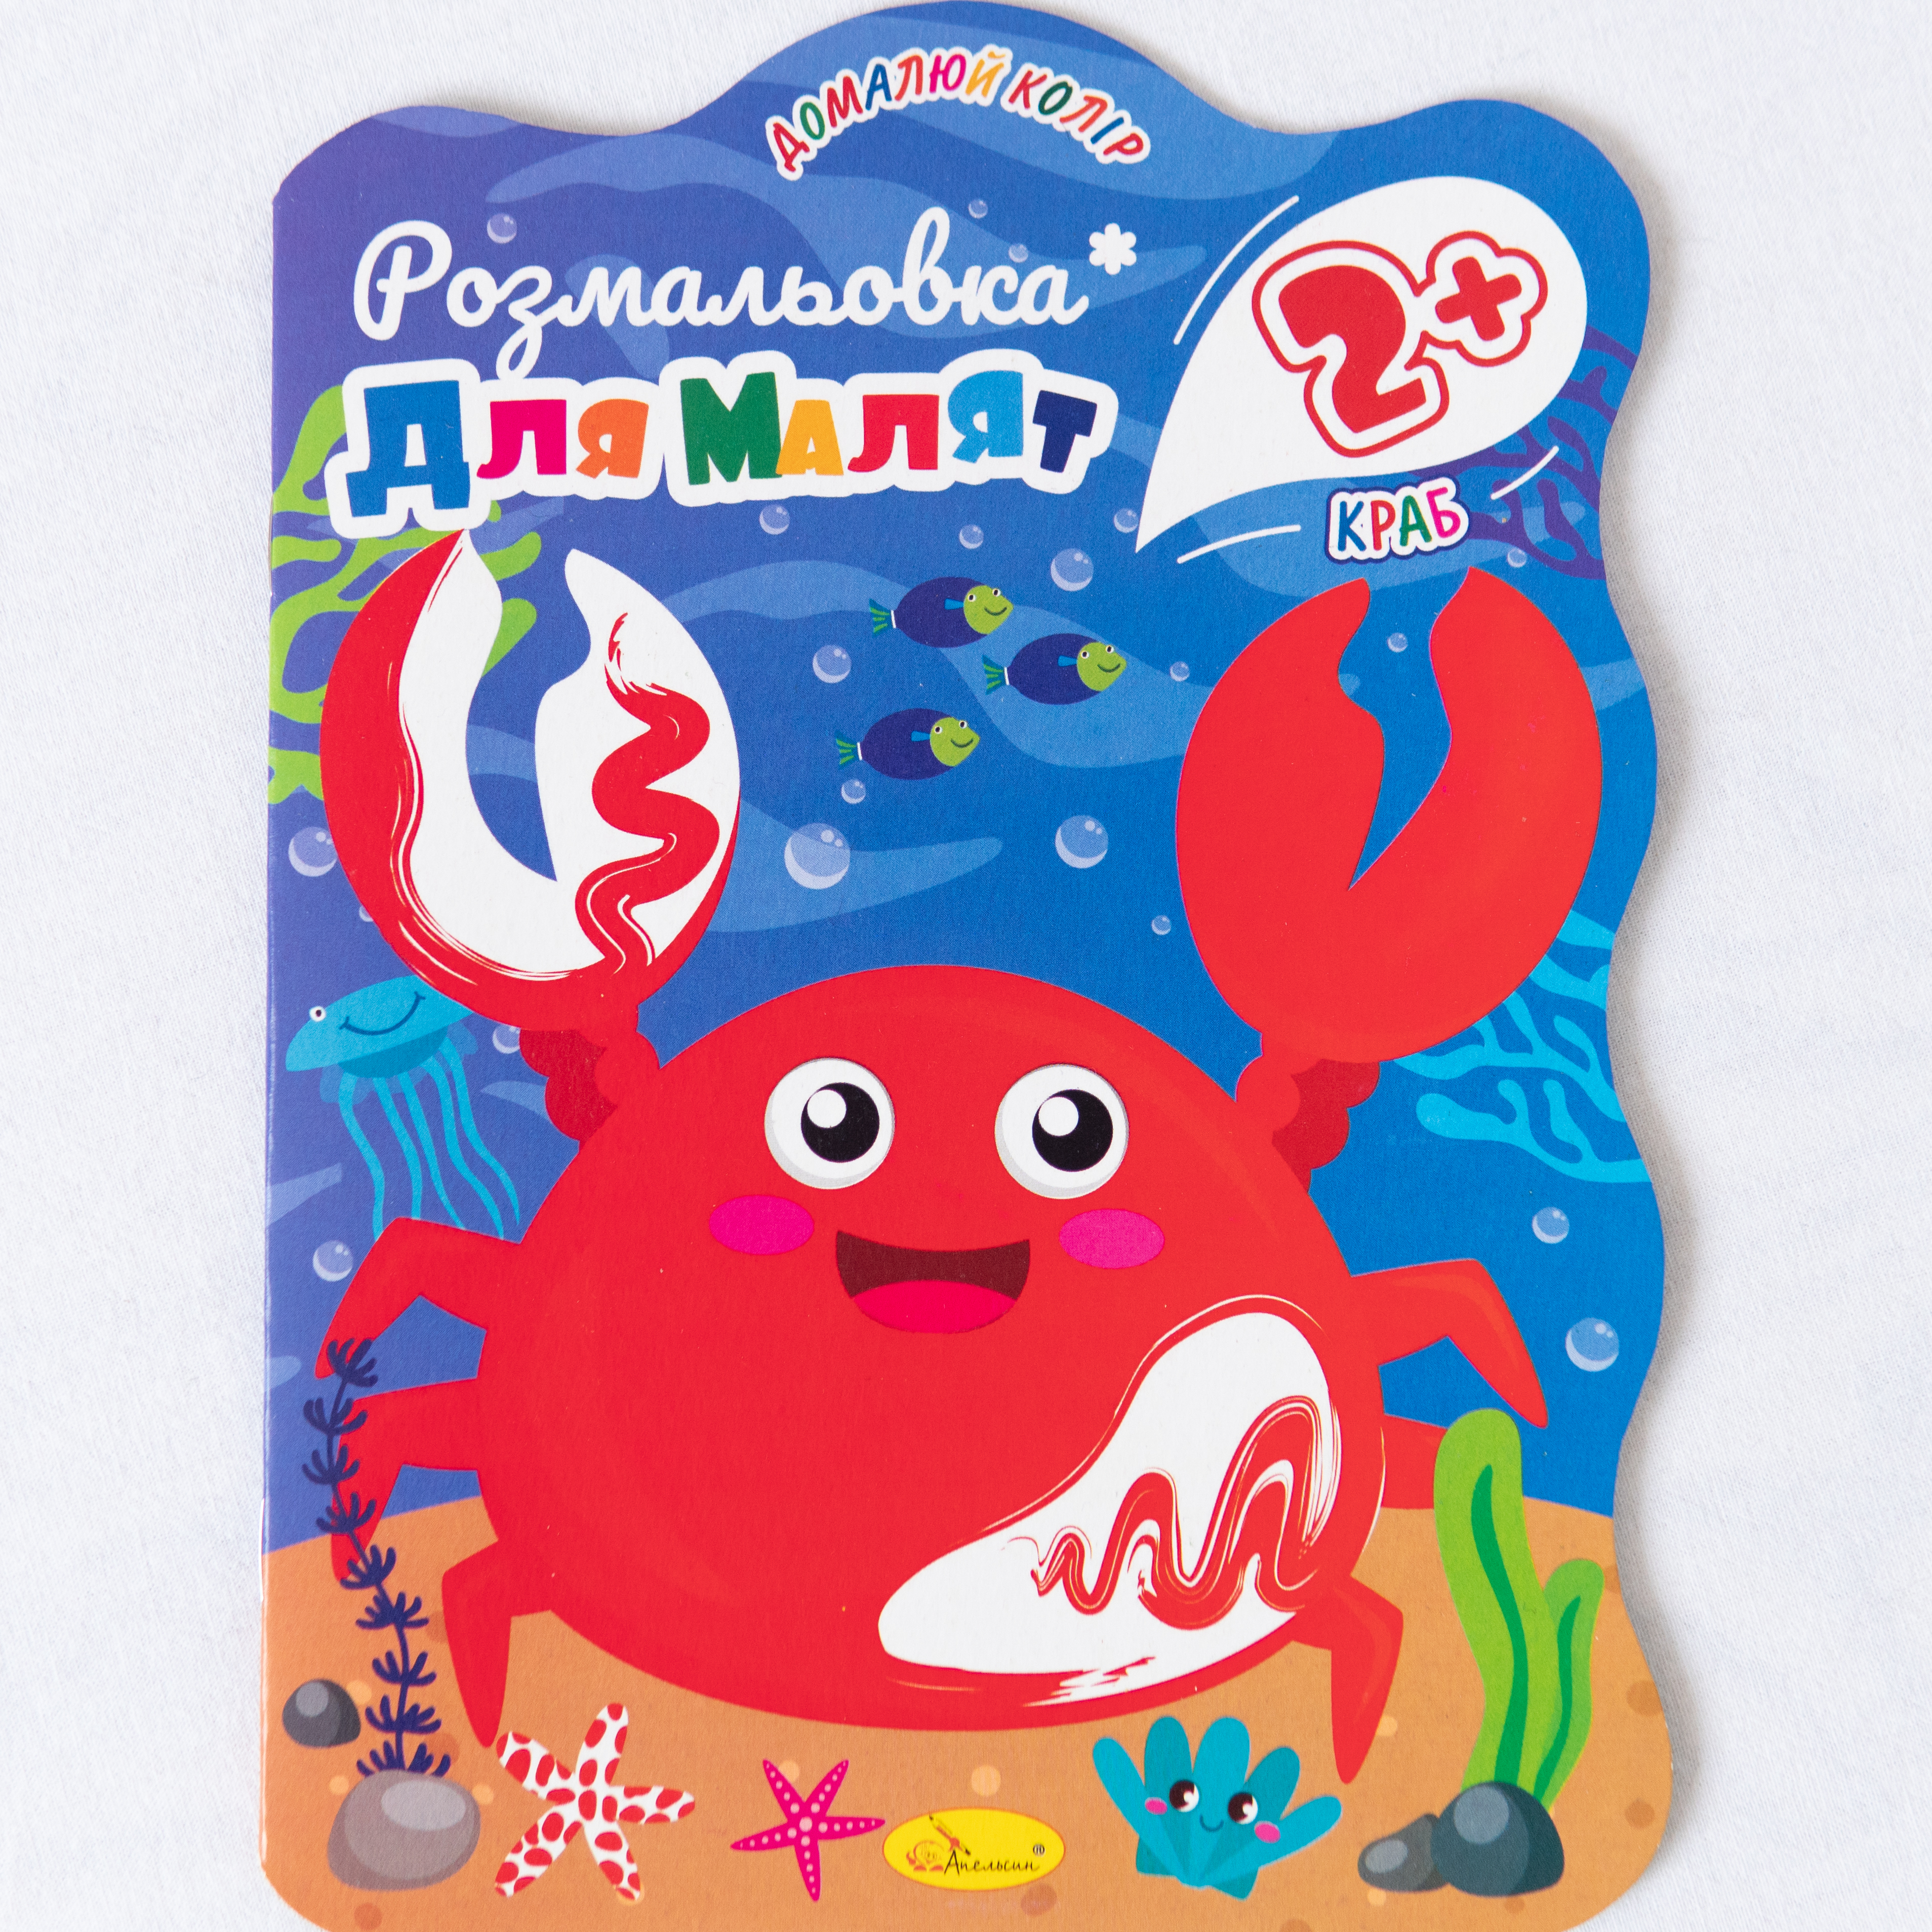 Malbuch für Kleinkinder Krabbe ukrainische Ausgabe/Malbuch für Kleinkinder Krabbe ukrainische Ausgabe